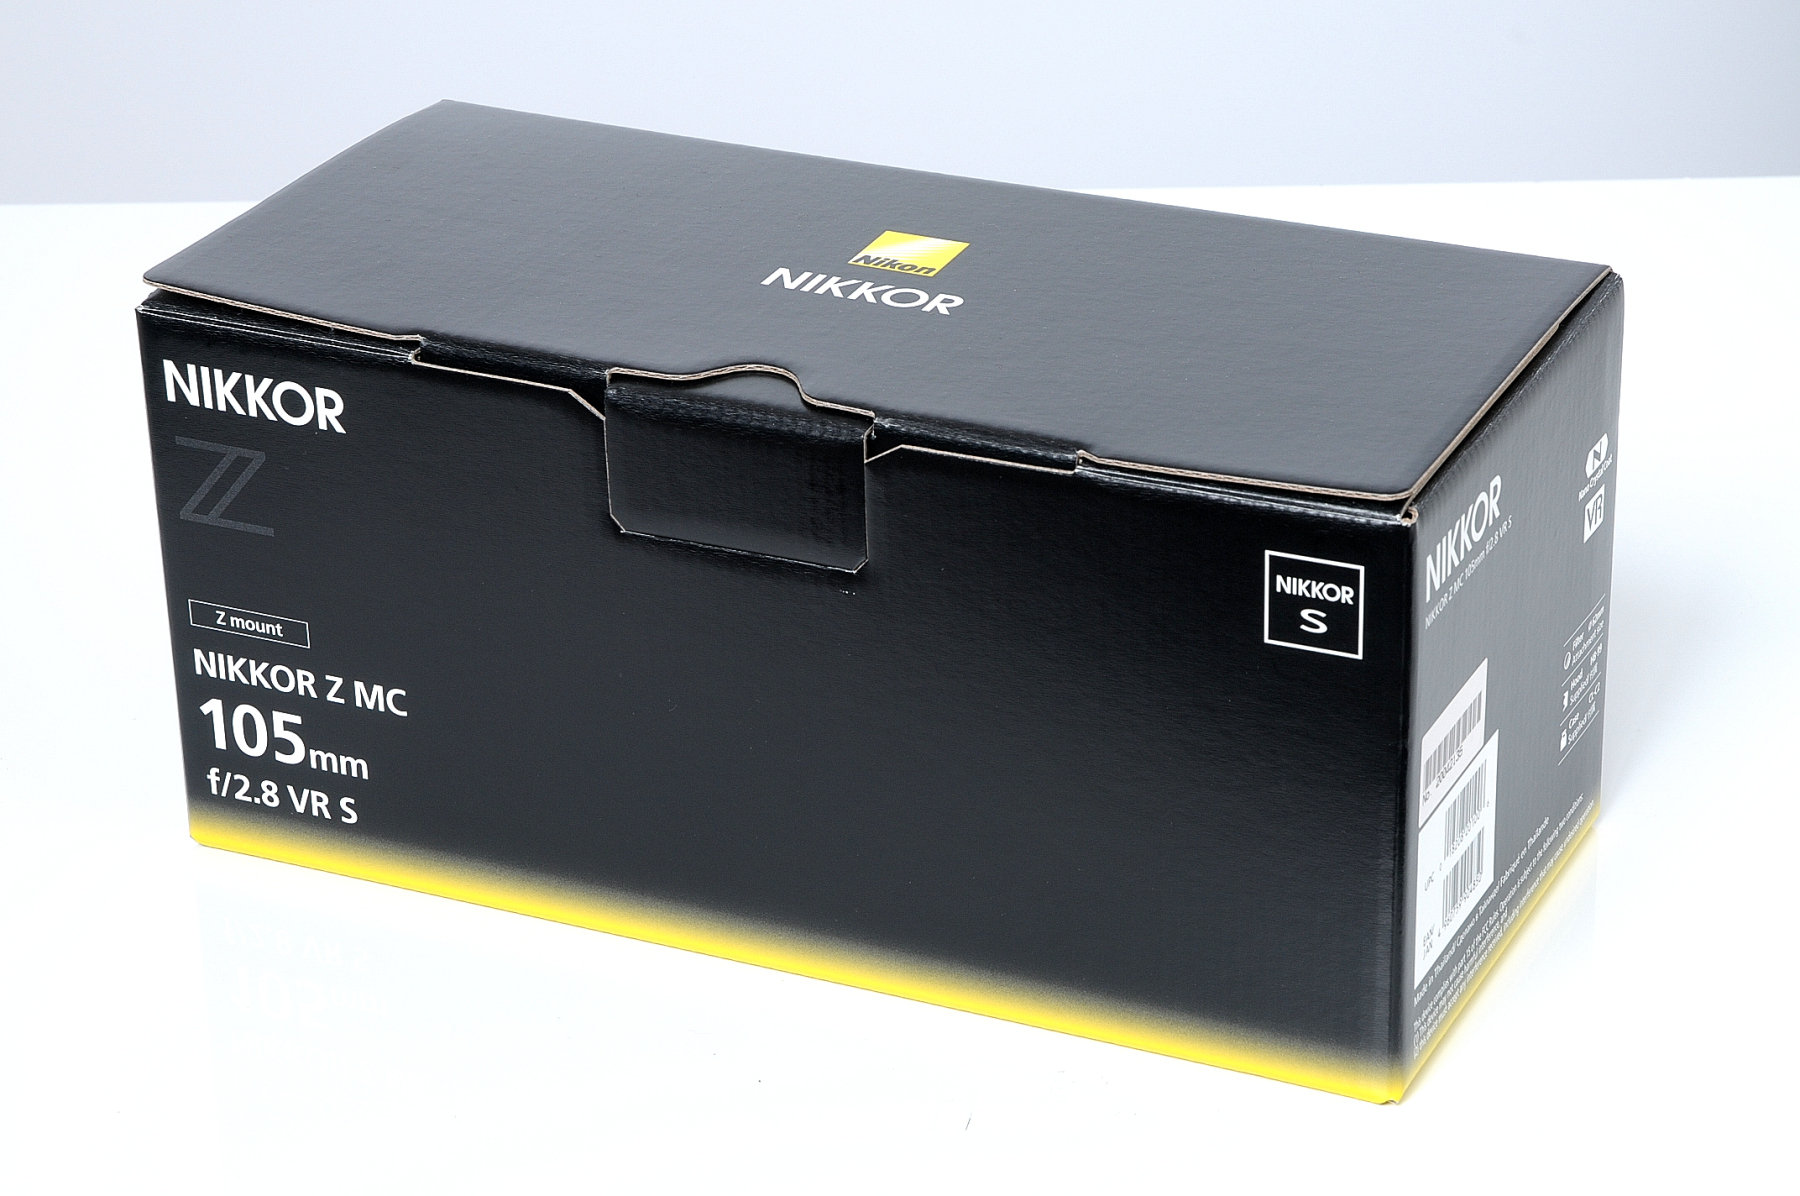 Nikon Nikkor Z MC 105/2.8 VR S